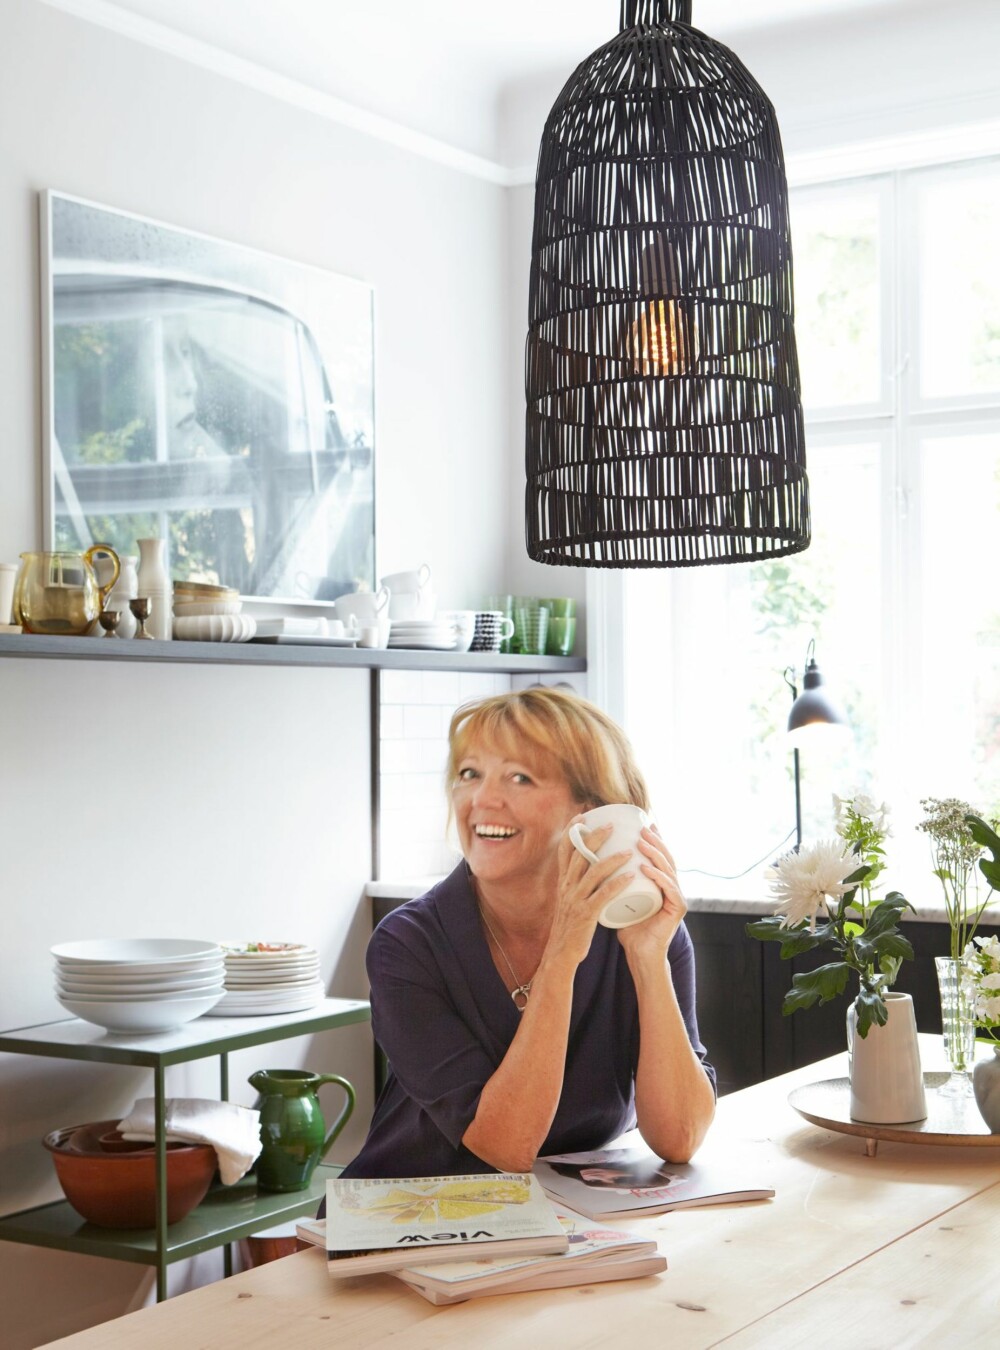 INNBYDENDE KJØKKEN: Trallen i grønt er fra Asplund, og den svarte lampen er fra Eske. Lisbeth Larsen har fått et hyggelig og innbydende kjøkken.